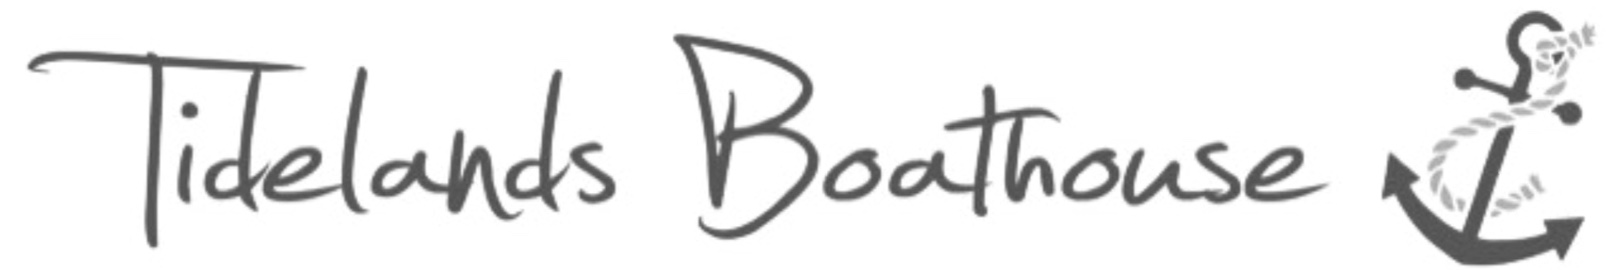 Logo - Tidelands Boathouse 